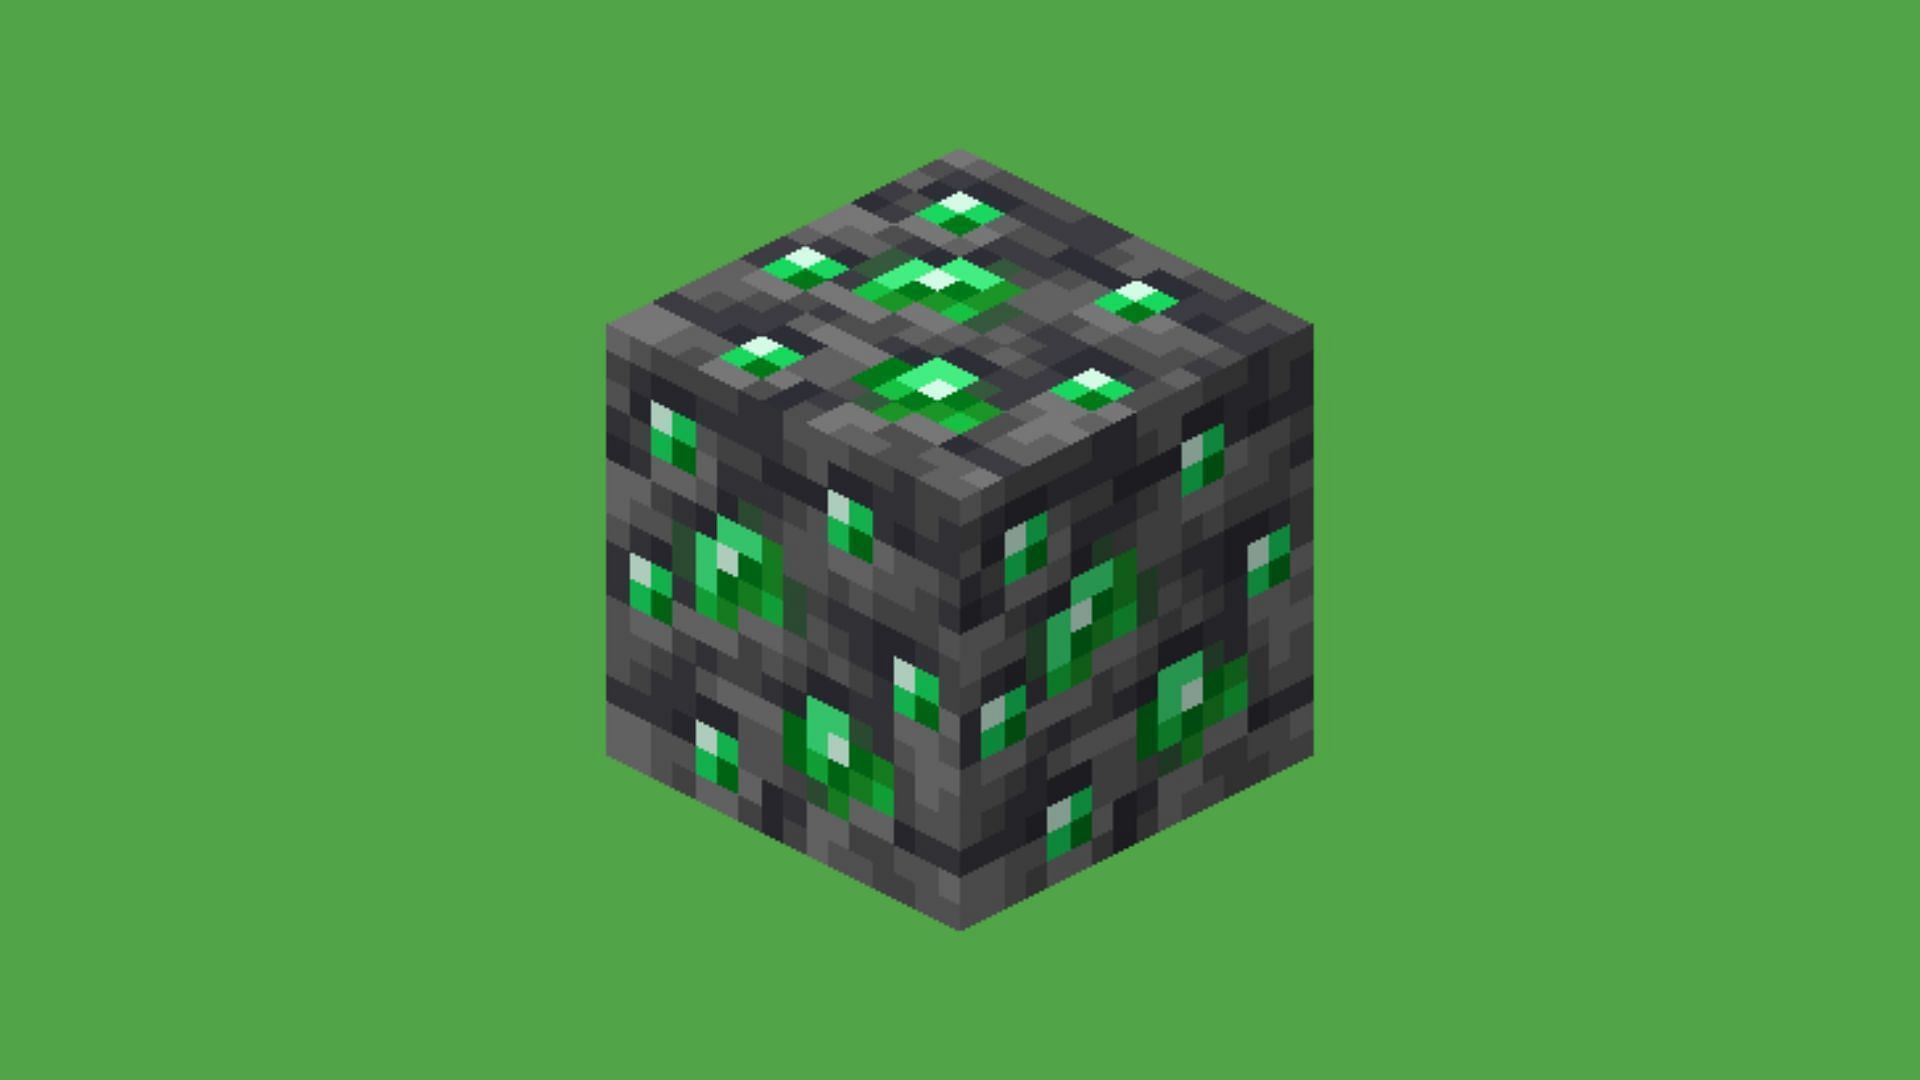 The deepslate emerald ore (Image via Mojang Studios)